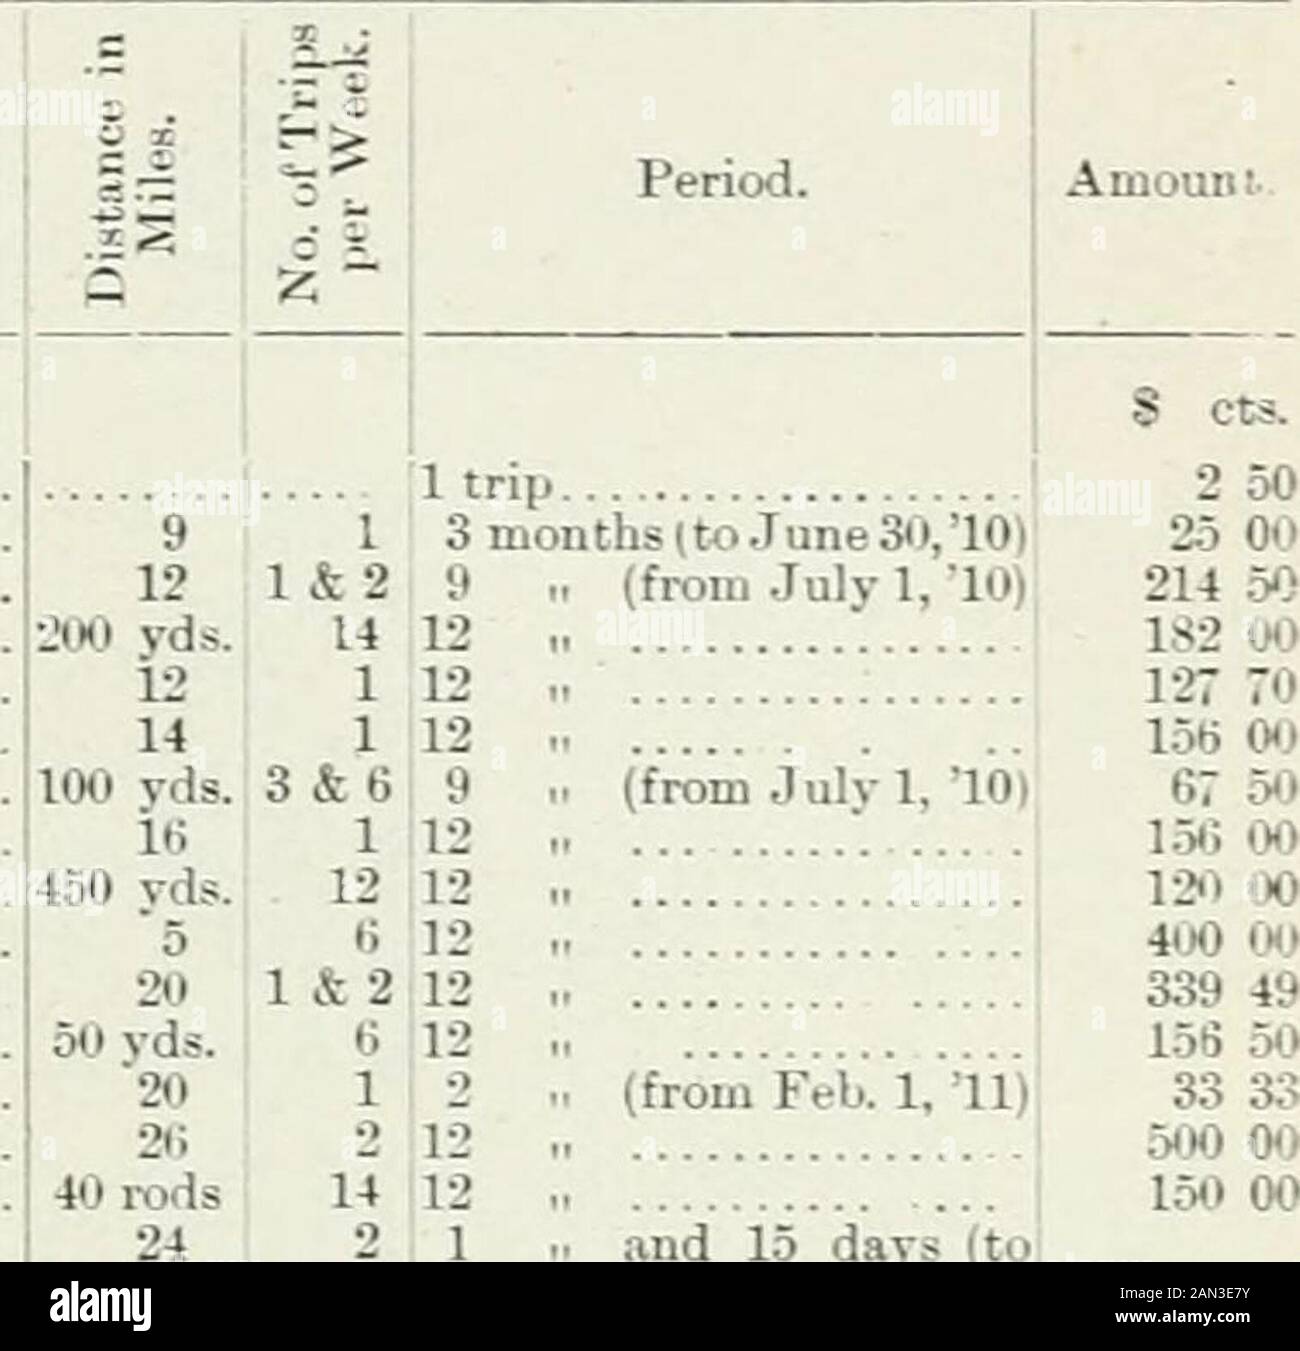 Documentos del período de sesiones del dominio del Canadá 1911-1912 . - Bienfait y la estación de tren Bienfait y Taylorton Bigford y Waldeck. Birmingham Y La Estación De Tren. Blairville y Lac Pelletier Blue Hill y Moosegaw Boharm y la estación de tren Boldenhurst y Elbow R. Maitland. A. Heggie C. E. .Jobb. ...E. J.Cleugh..6. C. Lockie... C. D. FUERTE... H. Caballero. .. V. Doerr J. Twigger. ..IW. Smith A. F. Brock ... B. A. HAGEN... J. B. amante ..A. McDougall. C. J. Lundy.... do do Bone Creek y lUerburn W. . Thring.. Bonnie View y McNaughtou J. C. Cooke Boscurvis y Oxbow Bredenbury y Ferrocarril Foto de stock